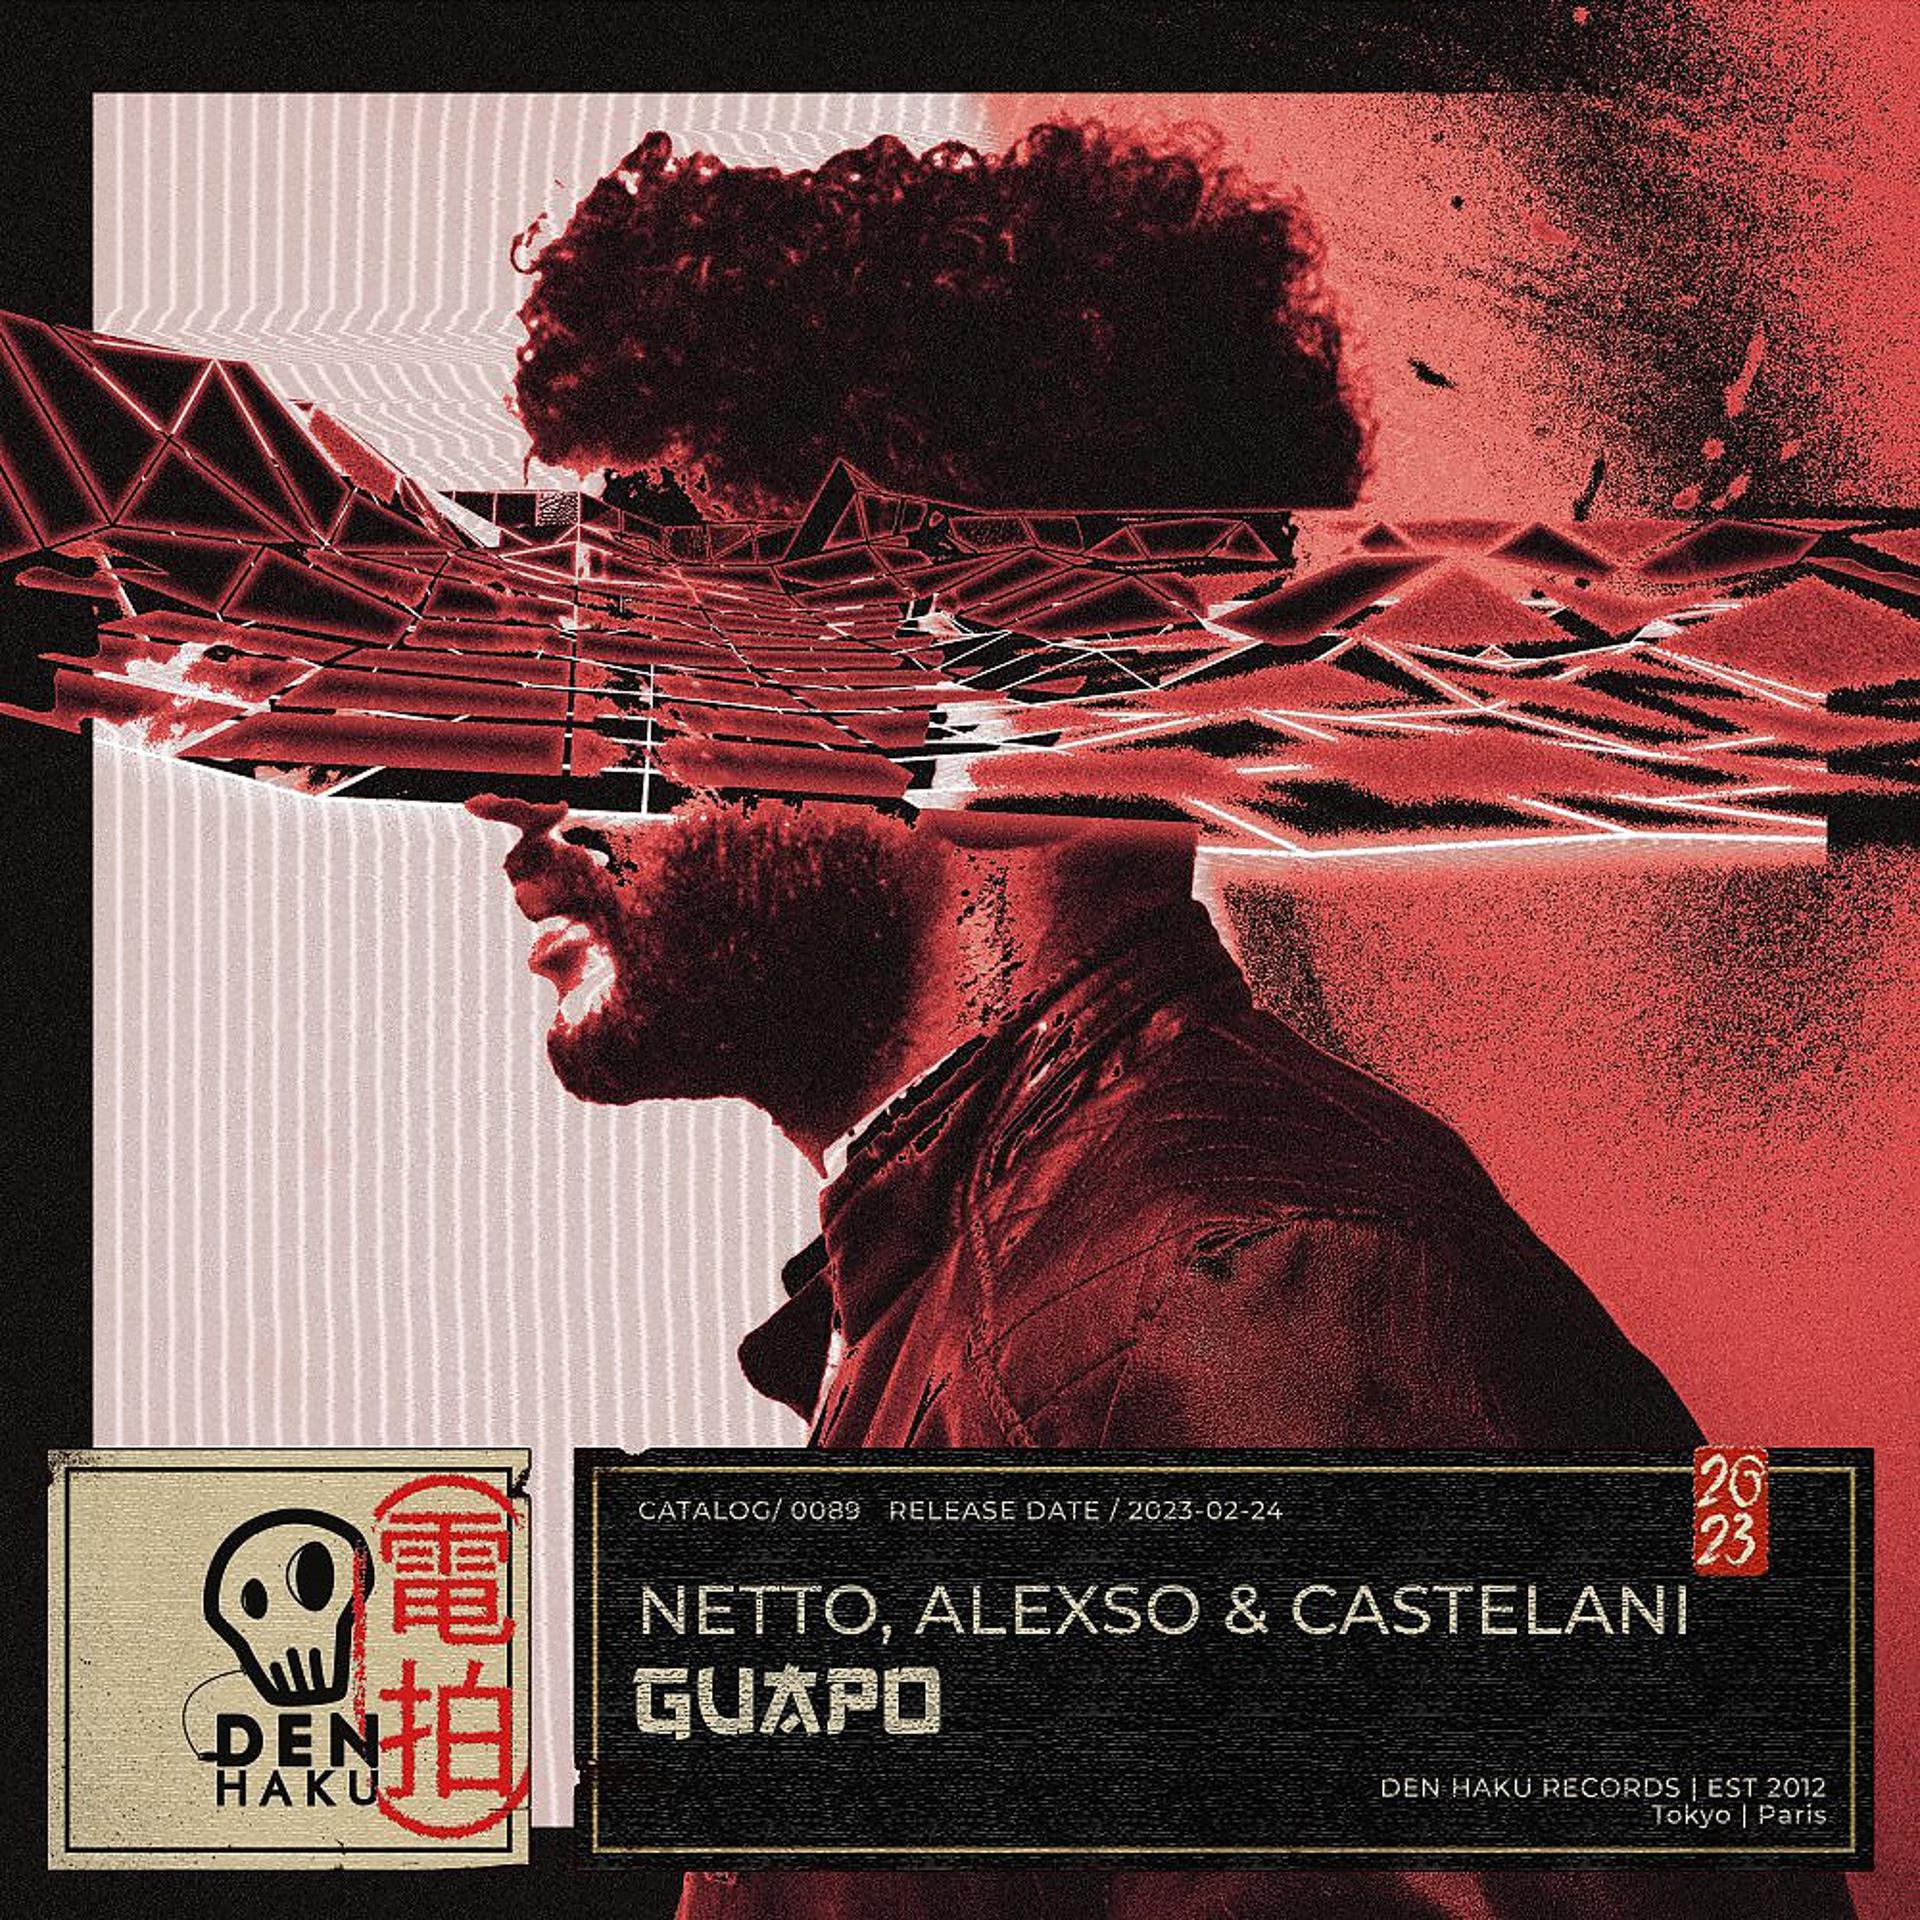 Постер альбома Guapo